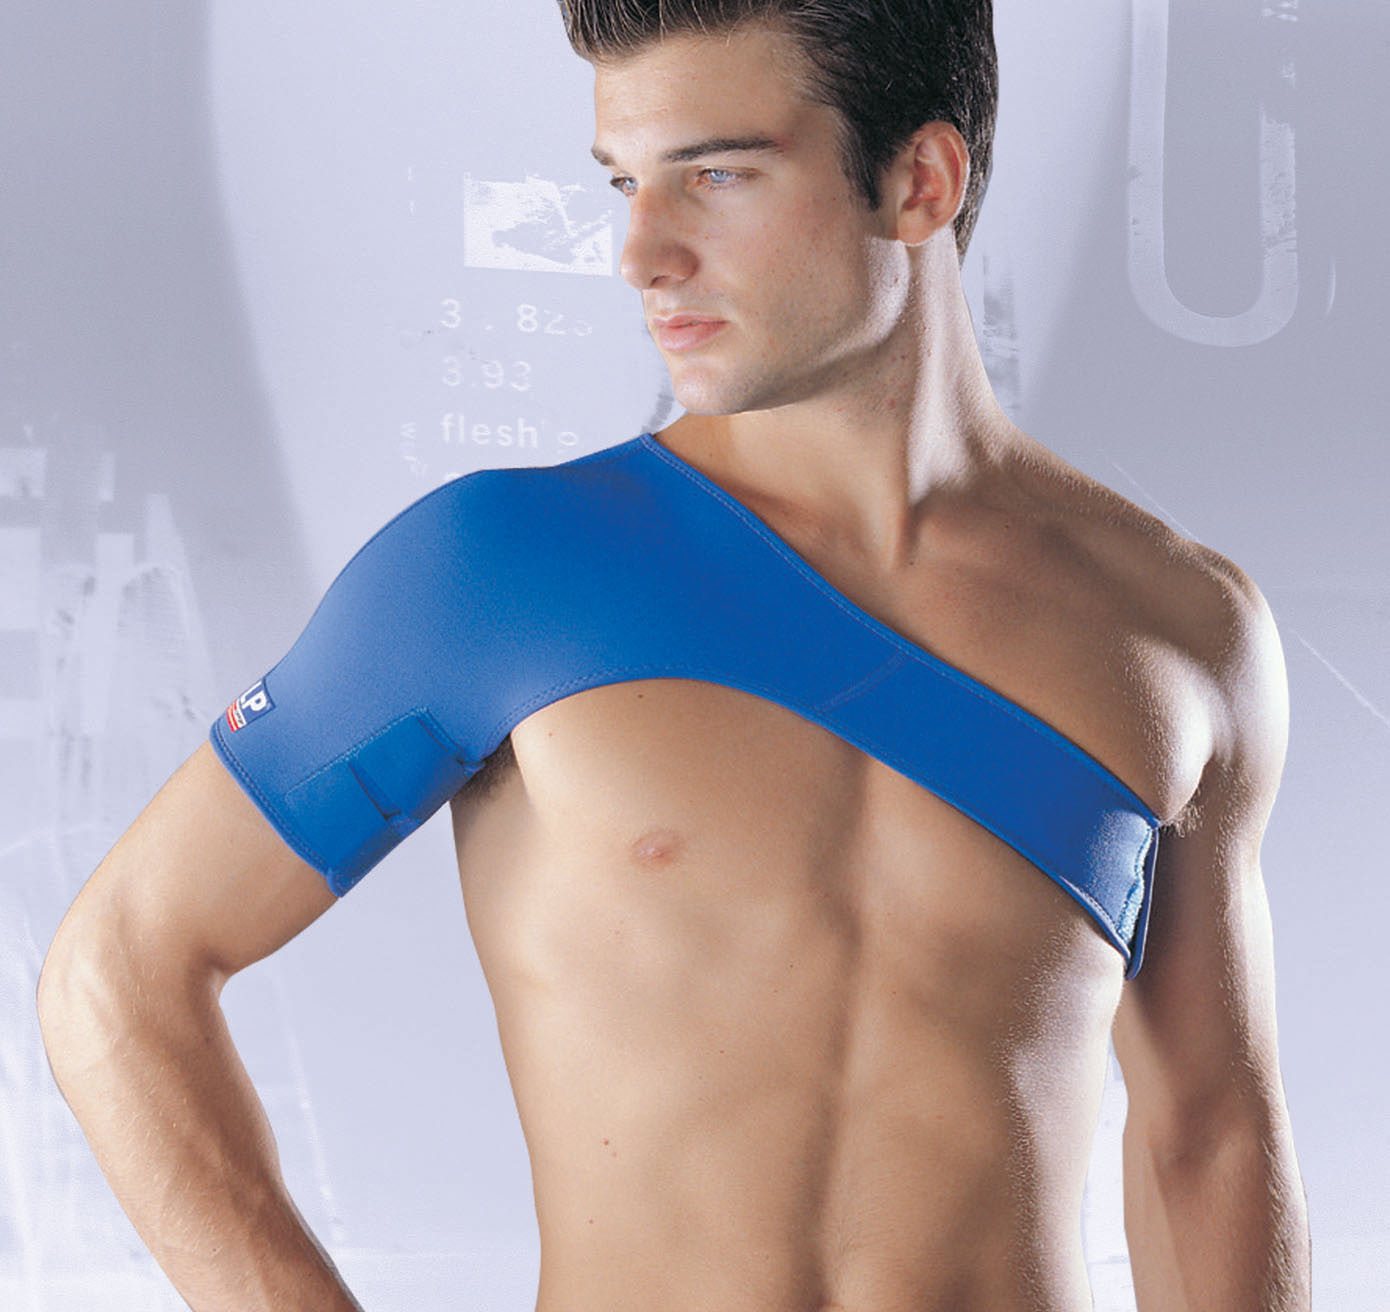 Neoprene Shoulder Support, Shoulder Compression Sleeve, Shoulder